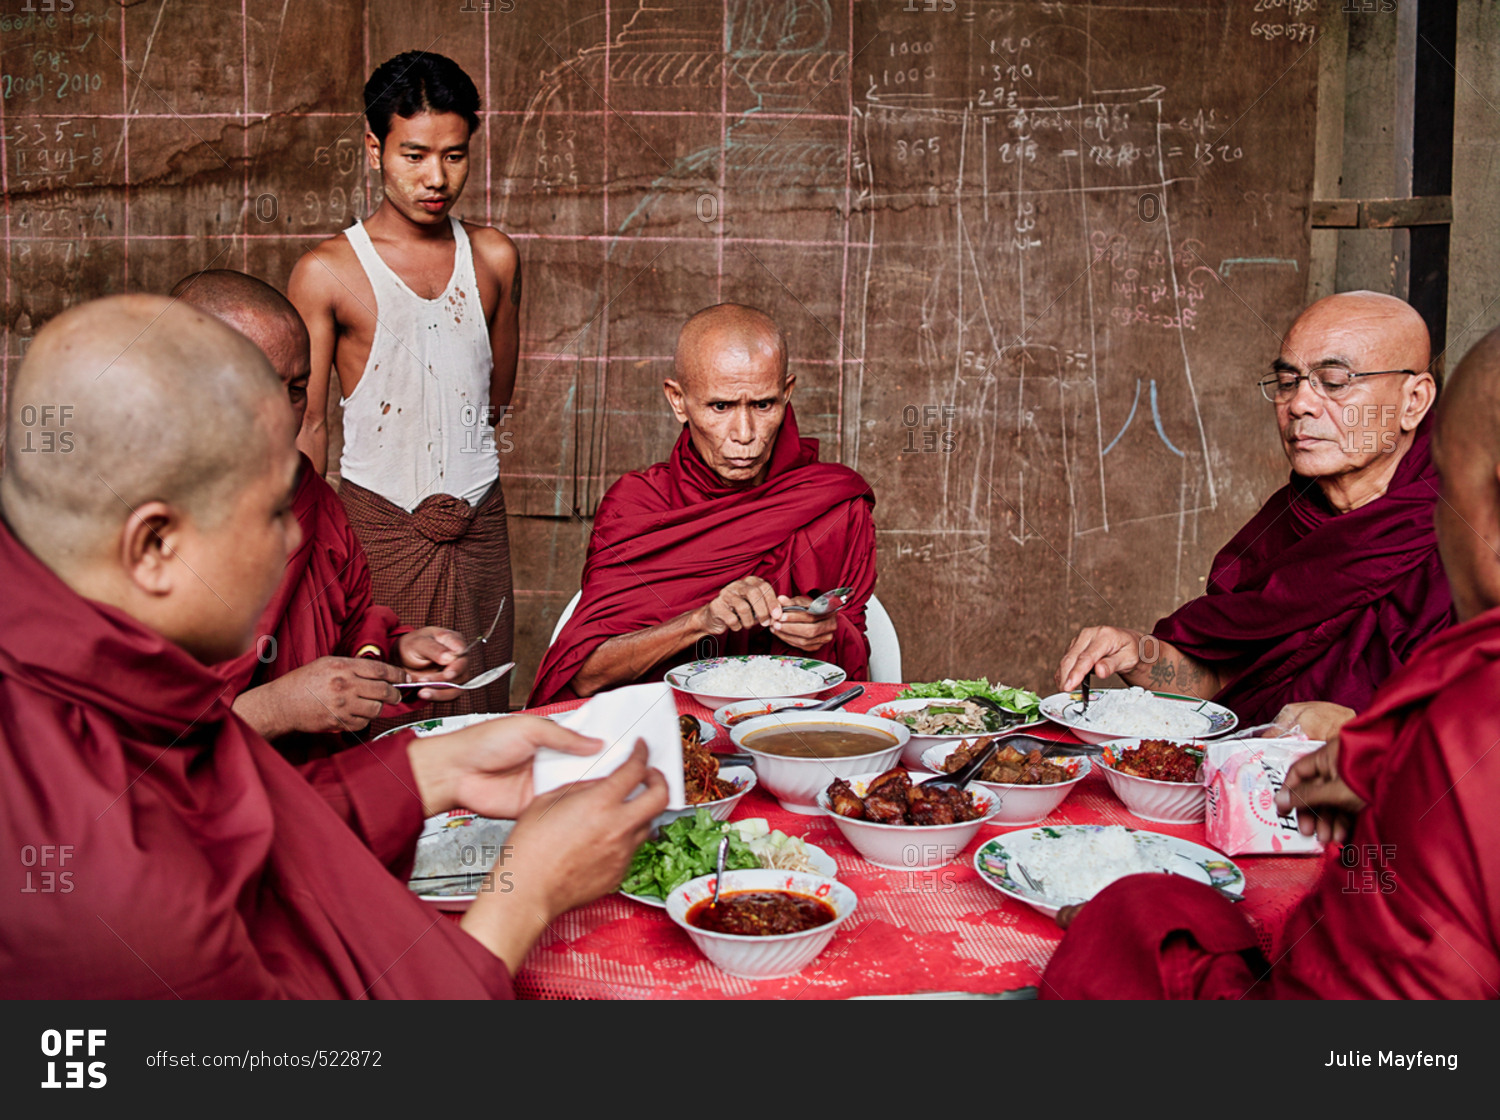 Монахи едят мясо